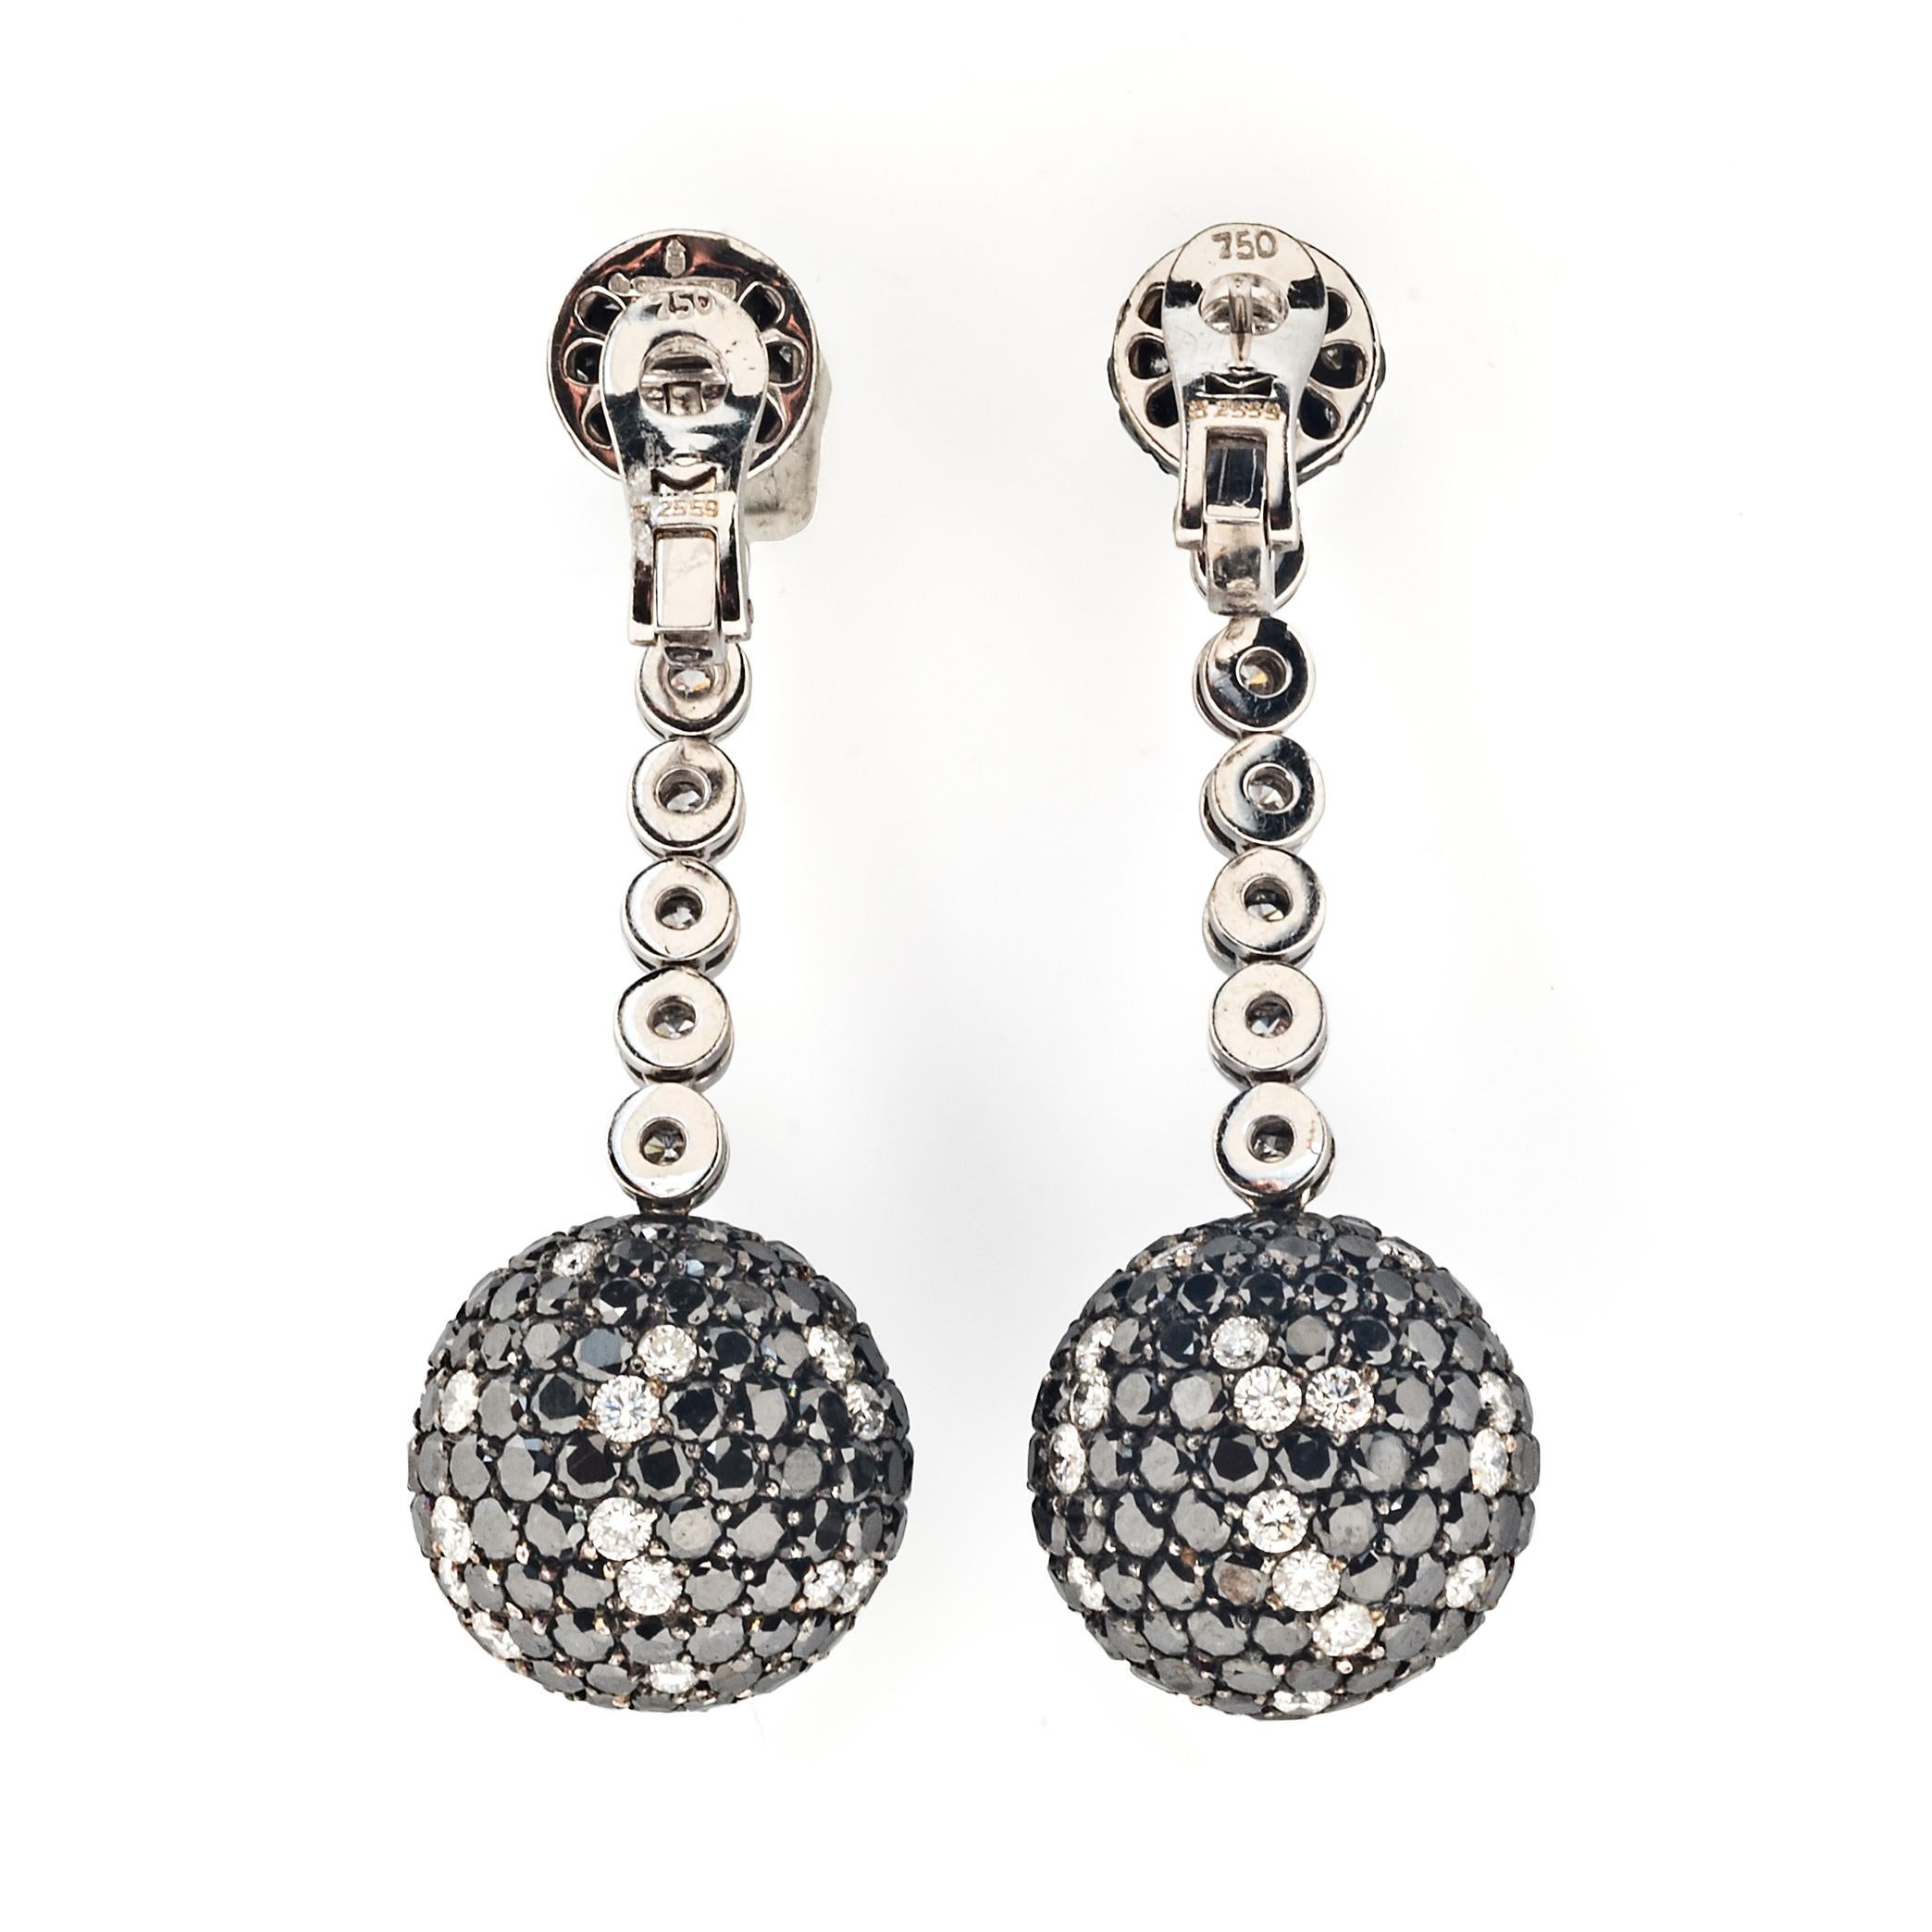 Inspiriert vom Glamour der Jetset-Partys, ist die Boule-Kollektion eine der charakteristischen Kreationen von de Grisogono. Dieses auffällige Paar Ohrringe wurde auf Bestellung gefertigt und funkelt mit ca. 25,1 Karat schwarzen Diamanten und ca. 3,0